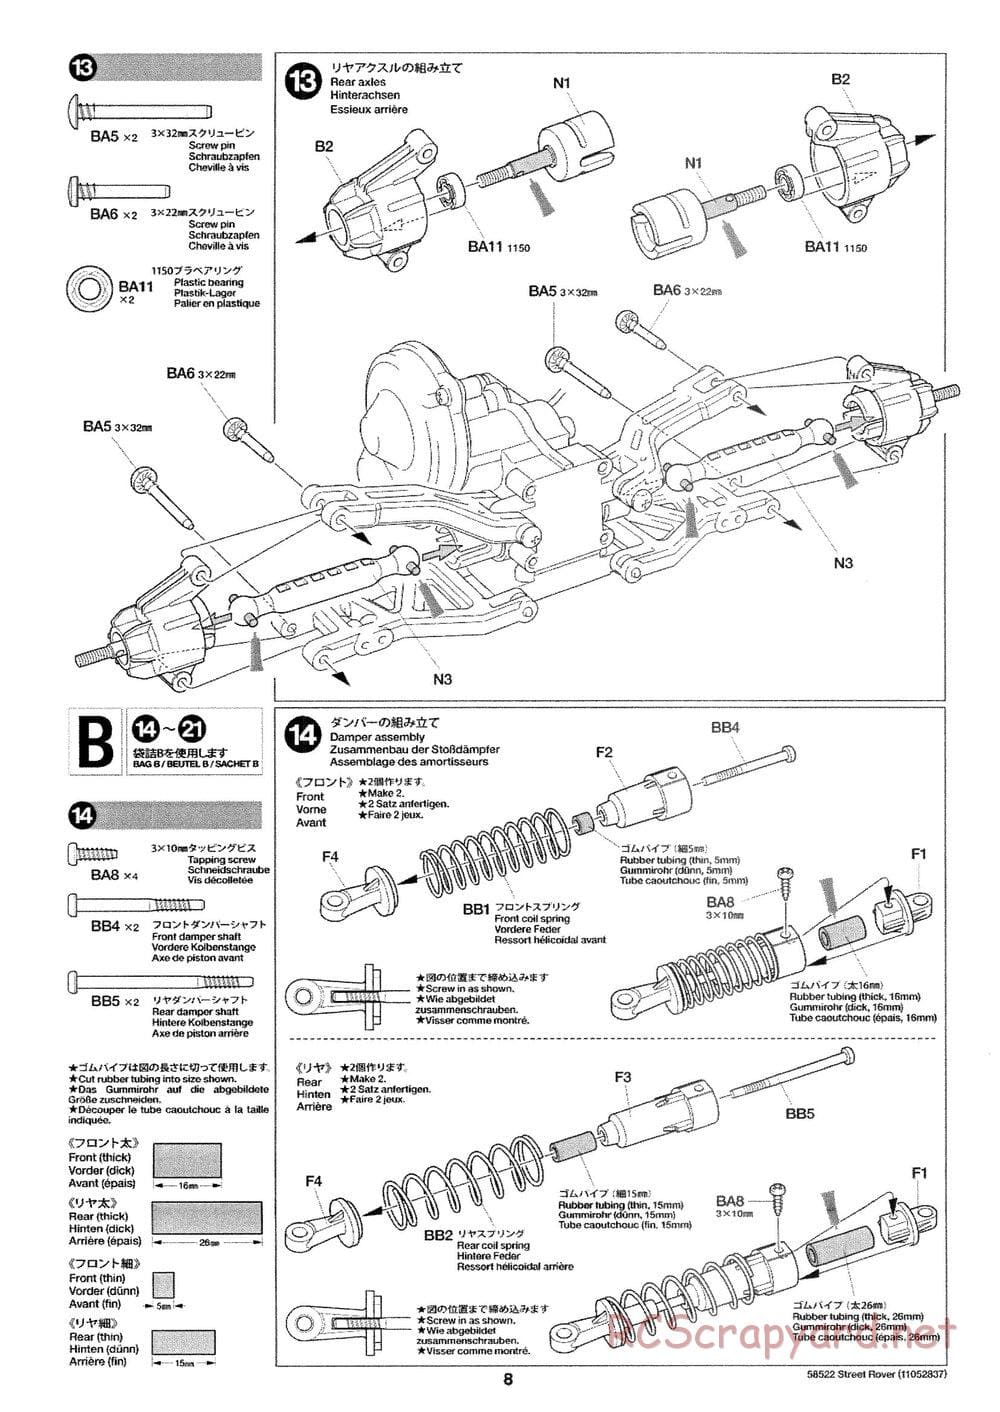 Tamiya - Street Rover Chassis - Manual - Page 9